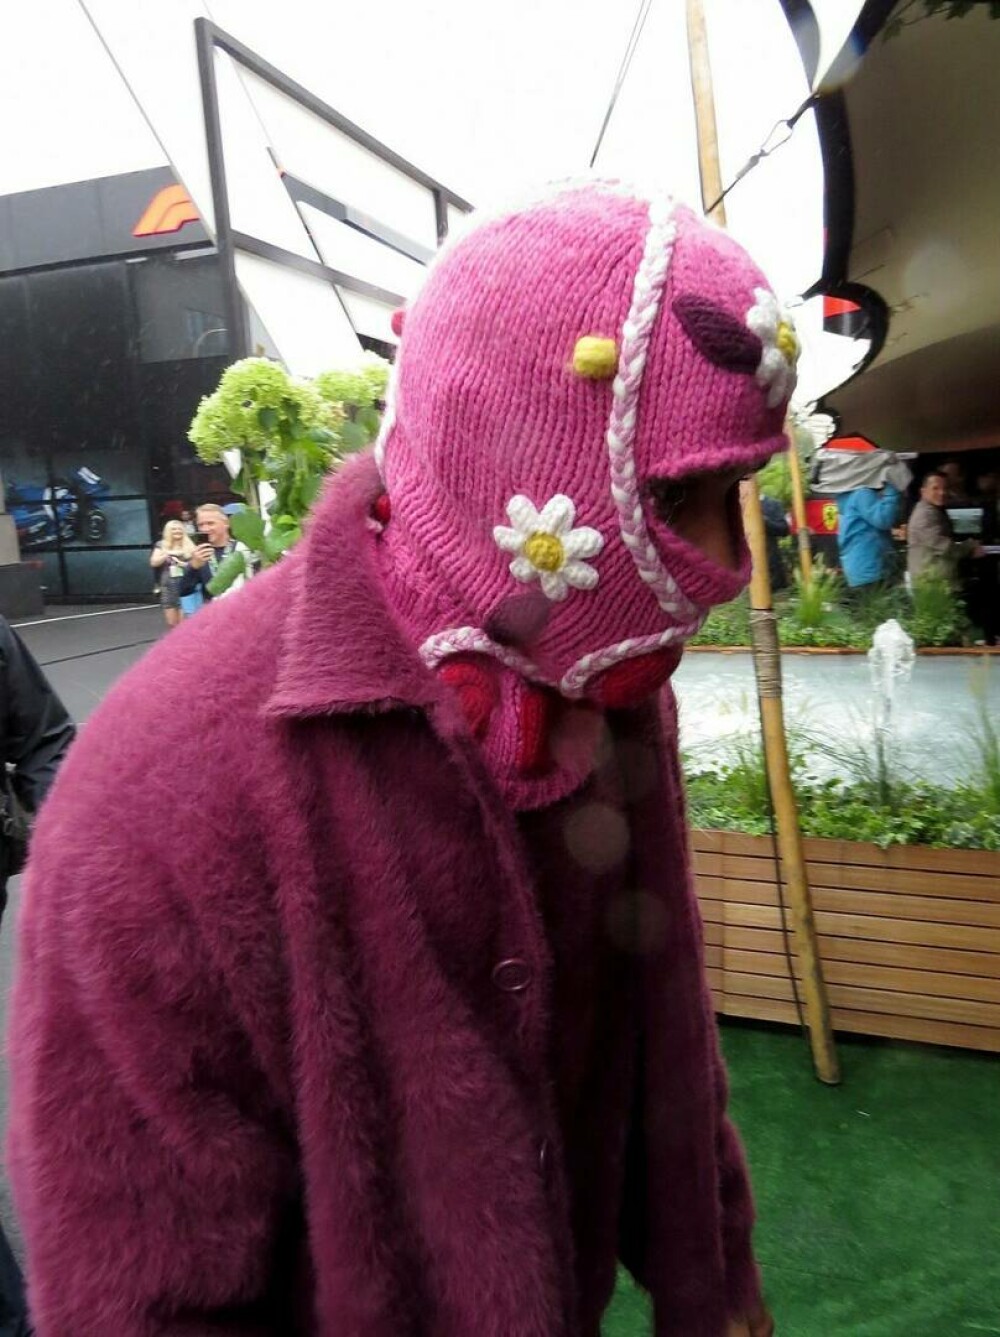 Starul care a purtat în public o căciulă roz tricotată, cu floricele. Doar ochii și nasul i se vedeau. FOTO - Imaginea 2